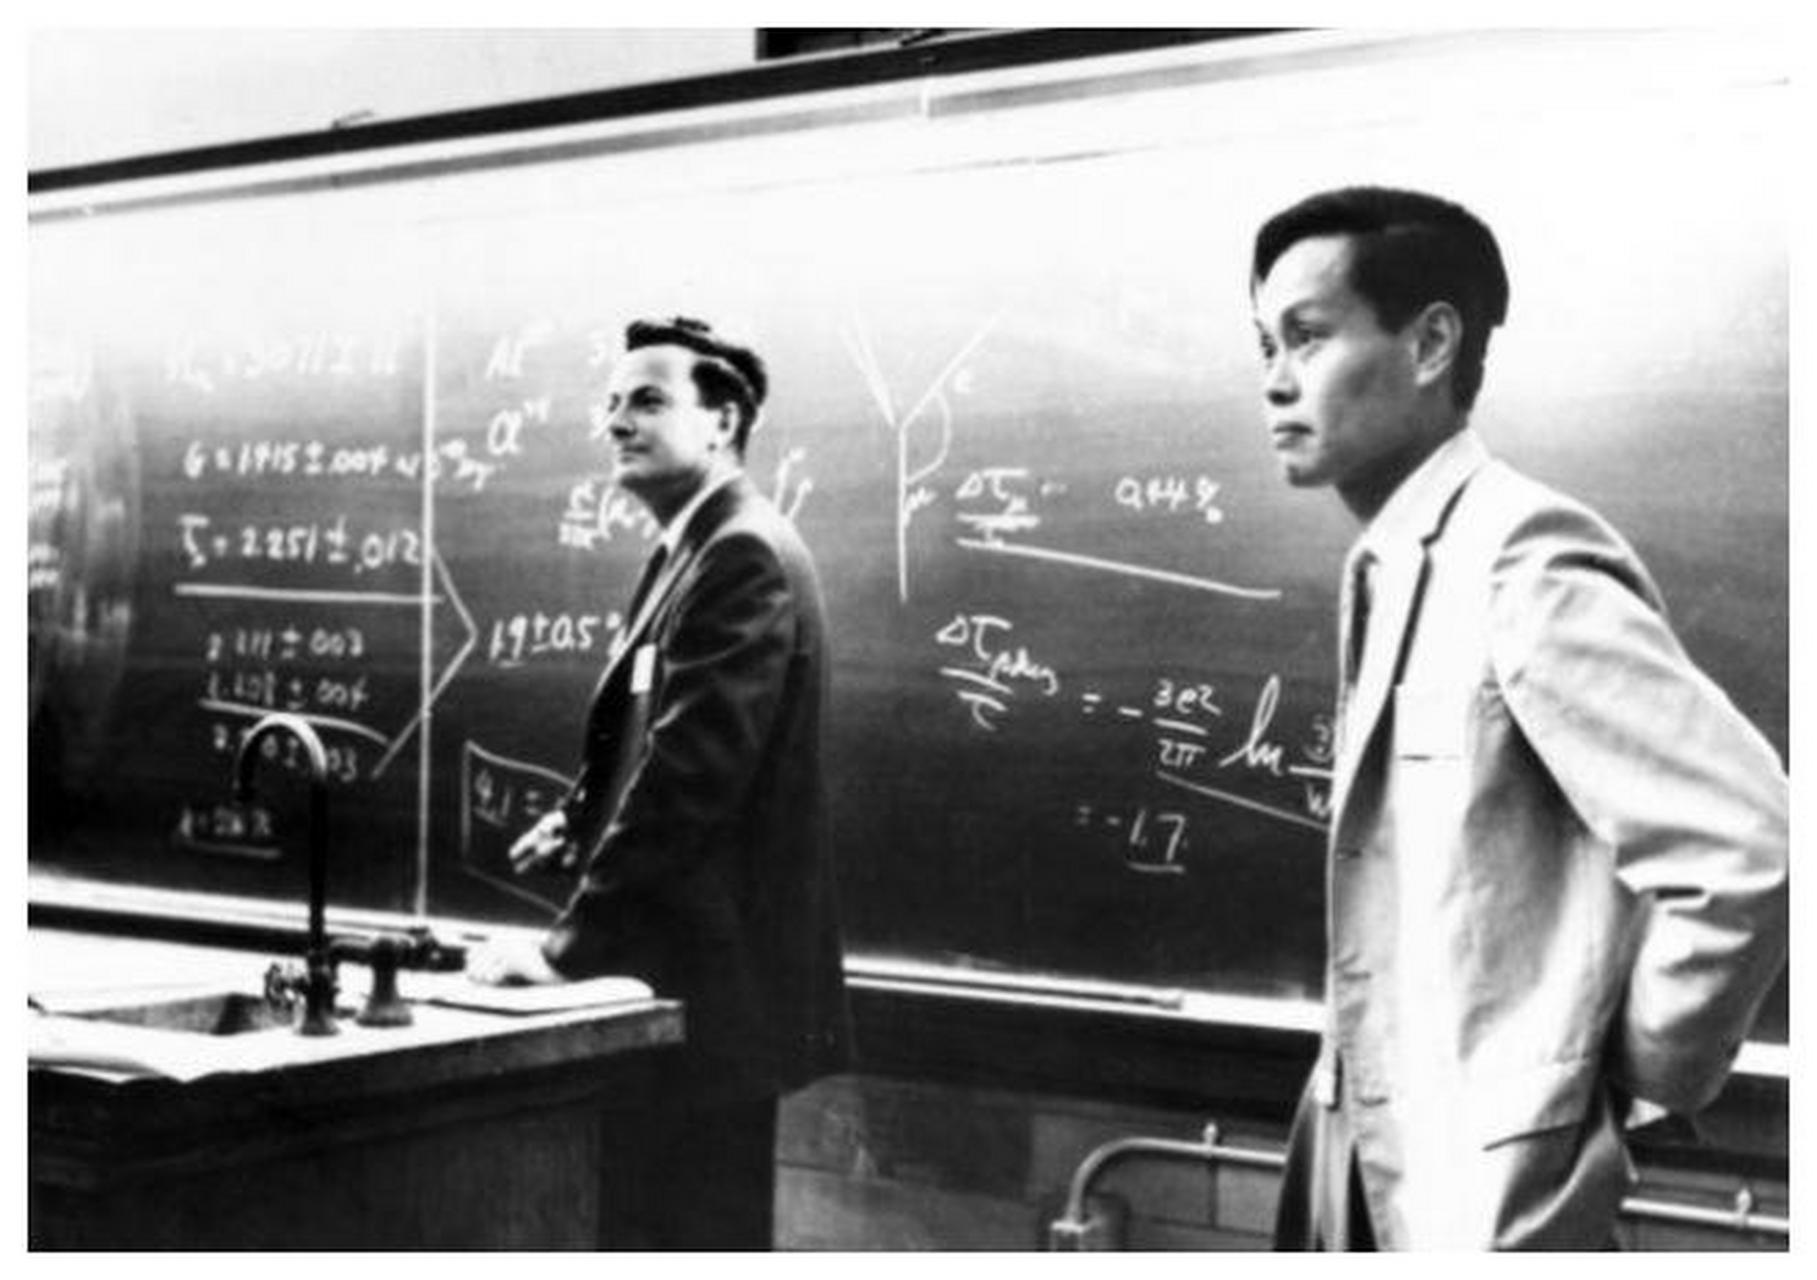 这张合影上的两位人物,一个是著名的理论物理学家费曼,他在1965年凭借